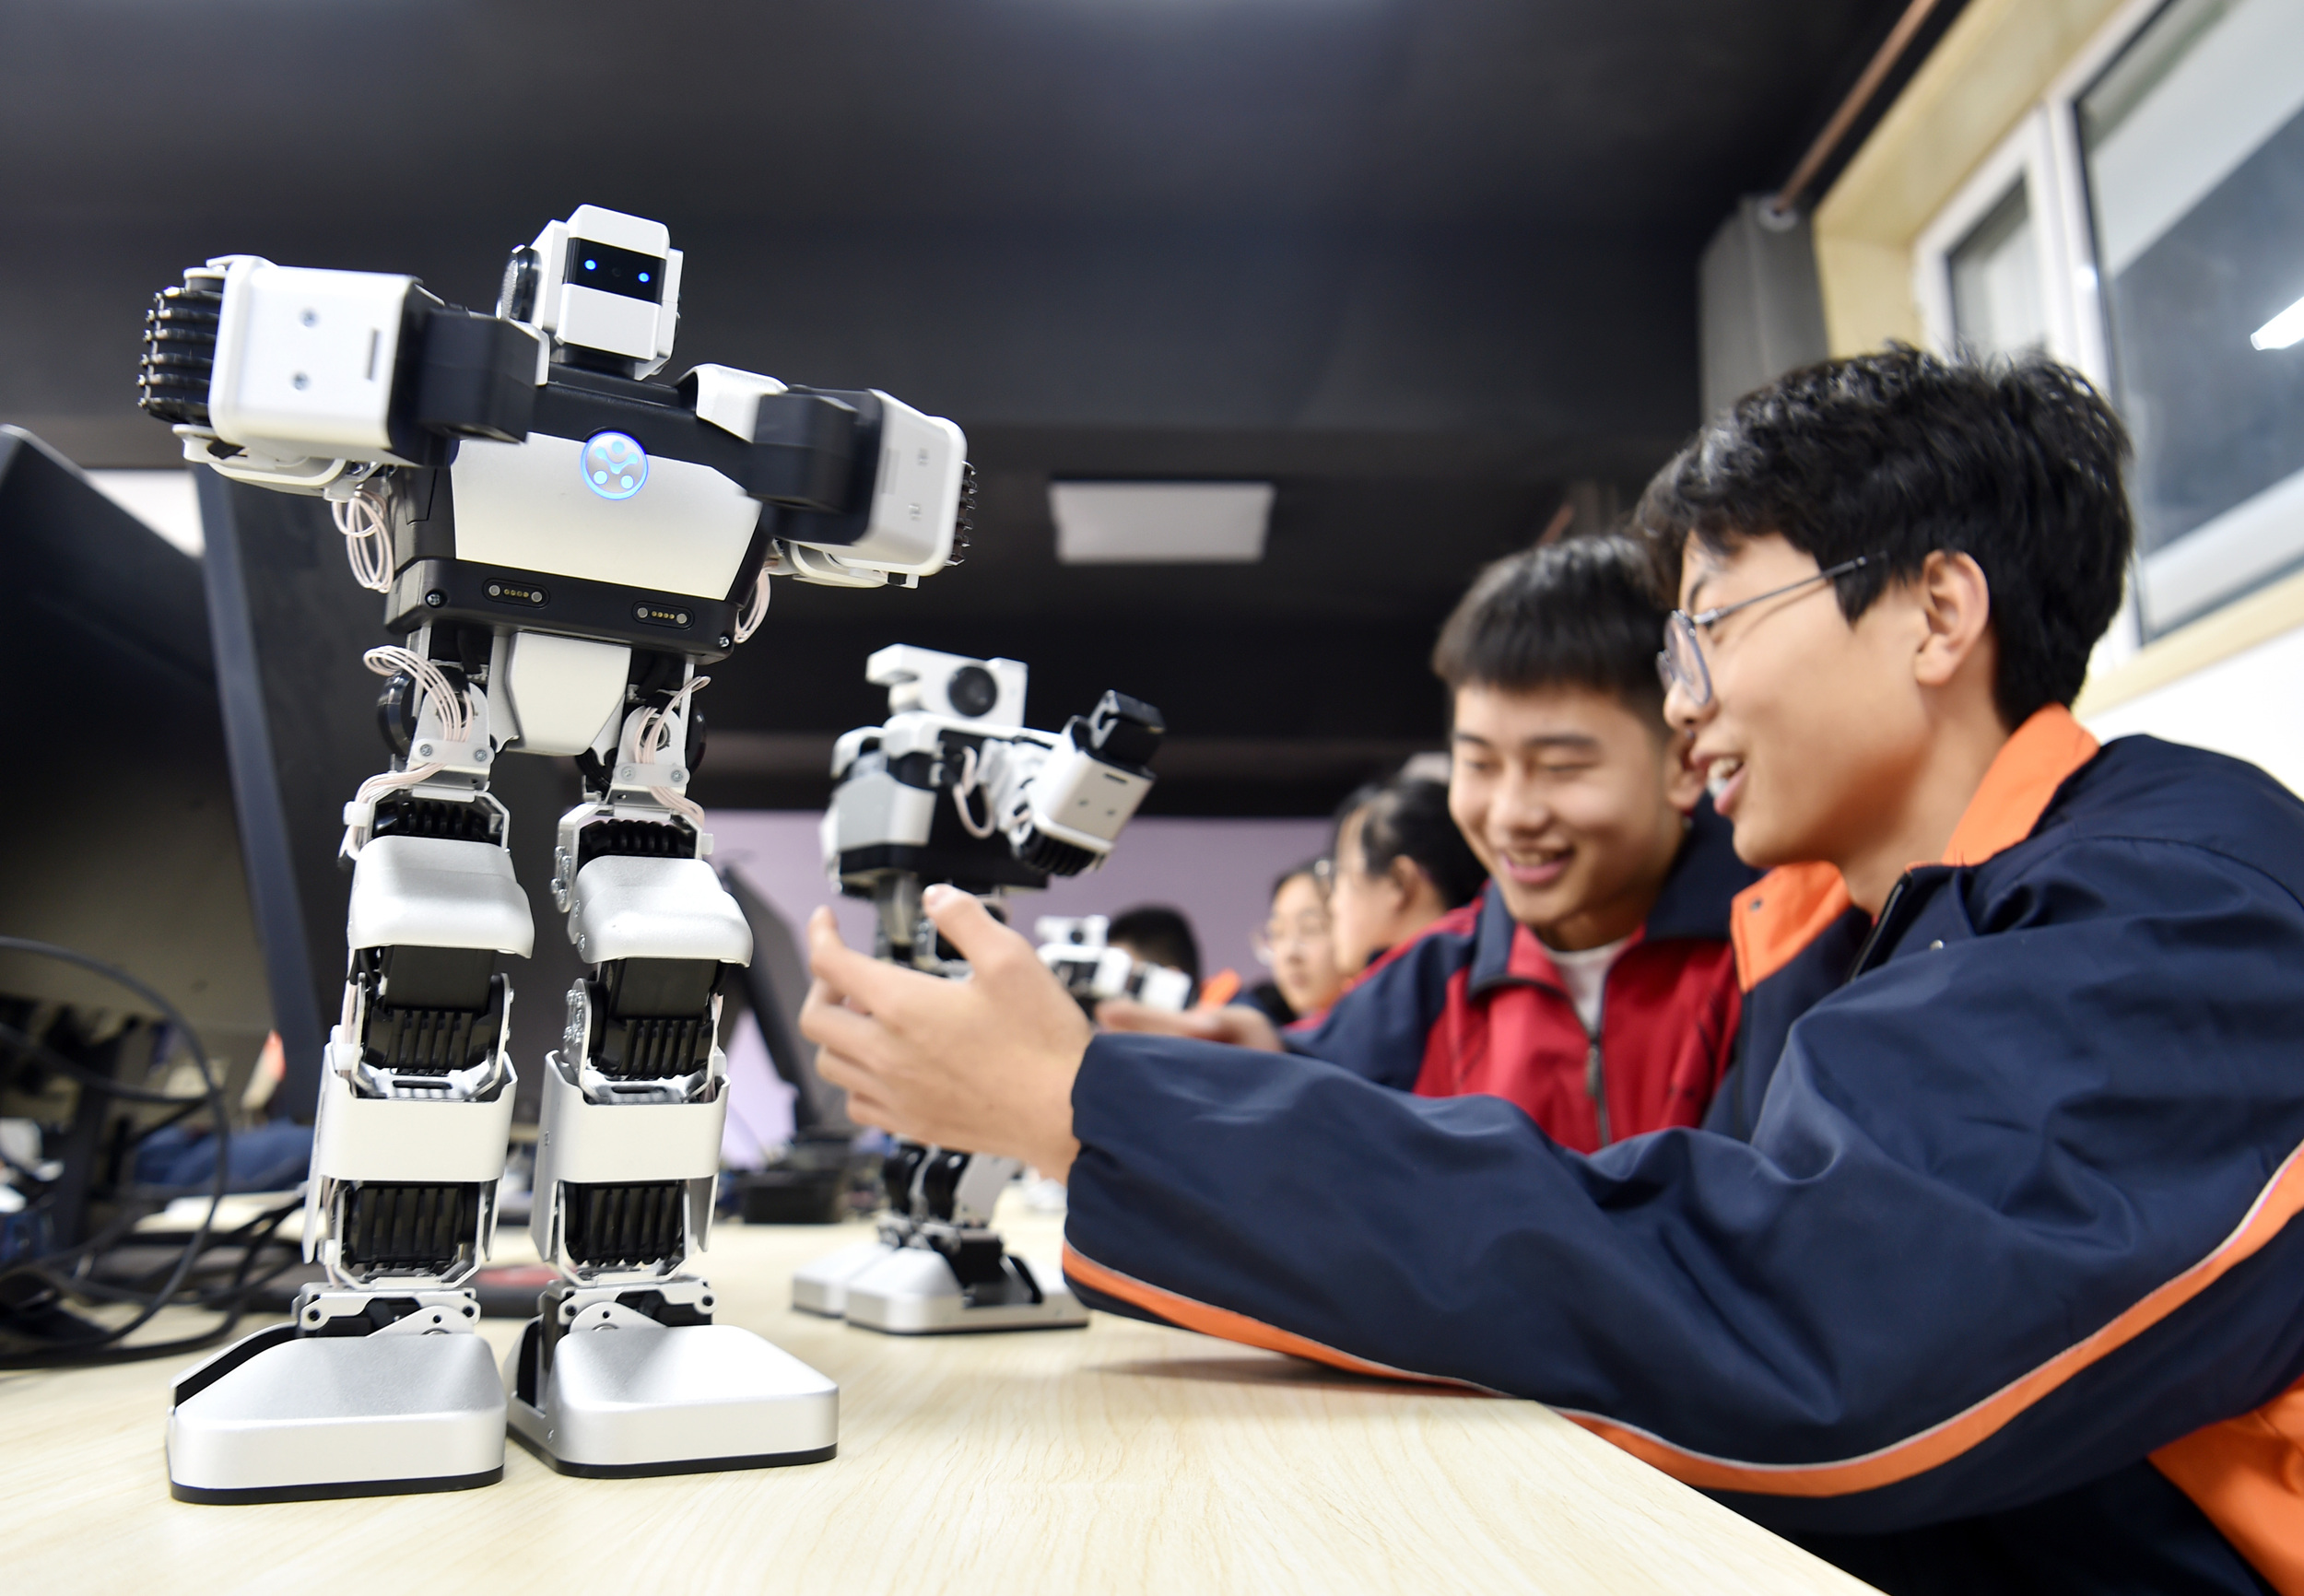 河北省石家庄市井陉县一职业技术教育学校，学生进行人工智能机器人调试学习。 张晓峰摄